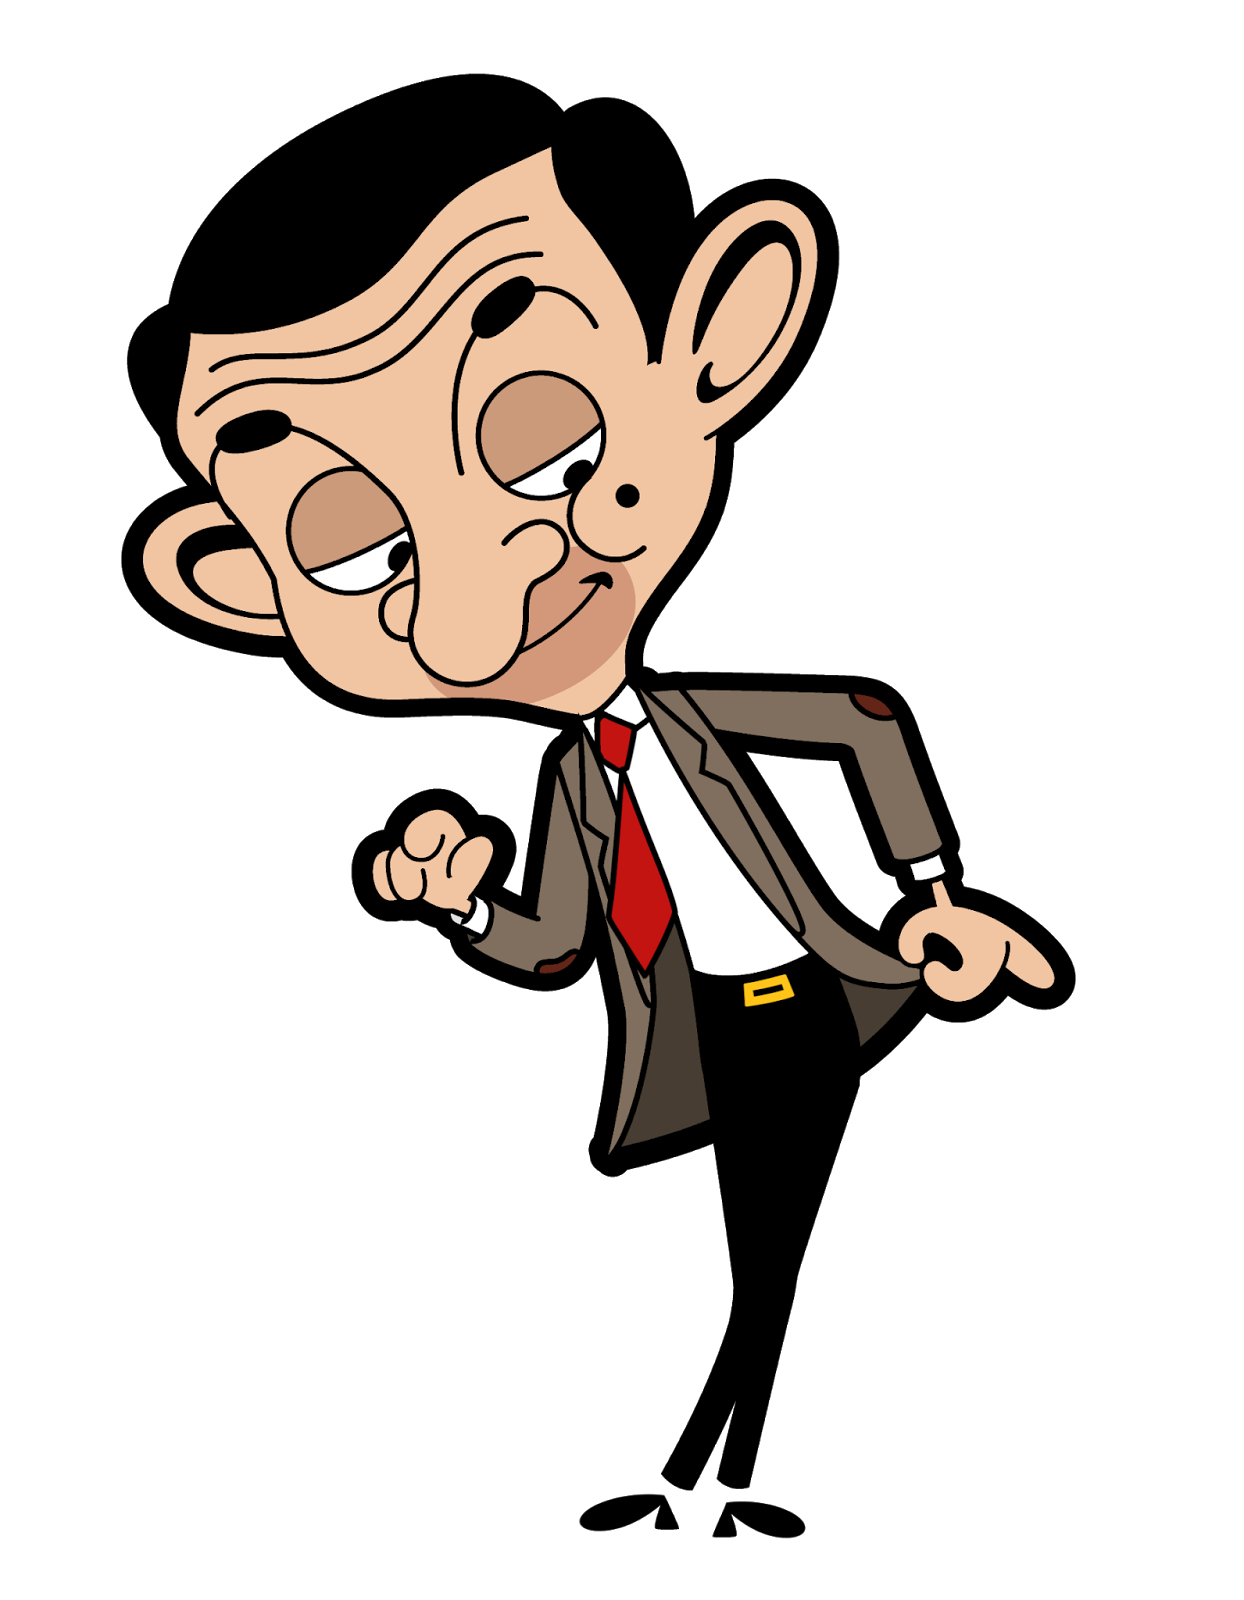 Mr. bean avatar character cartoon, Rowan Atkinson png image #25015